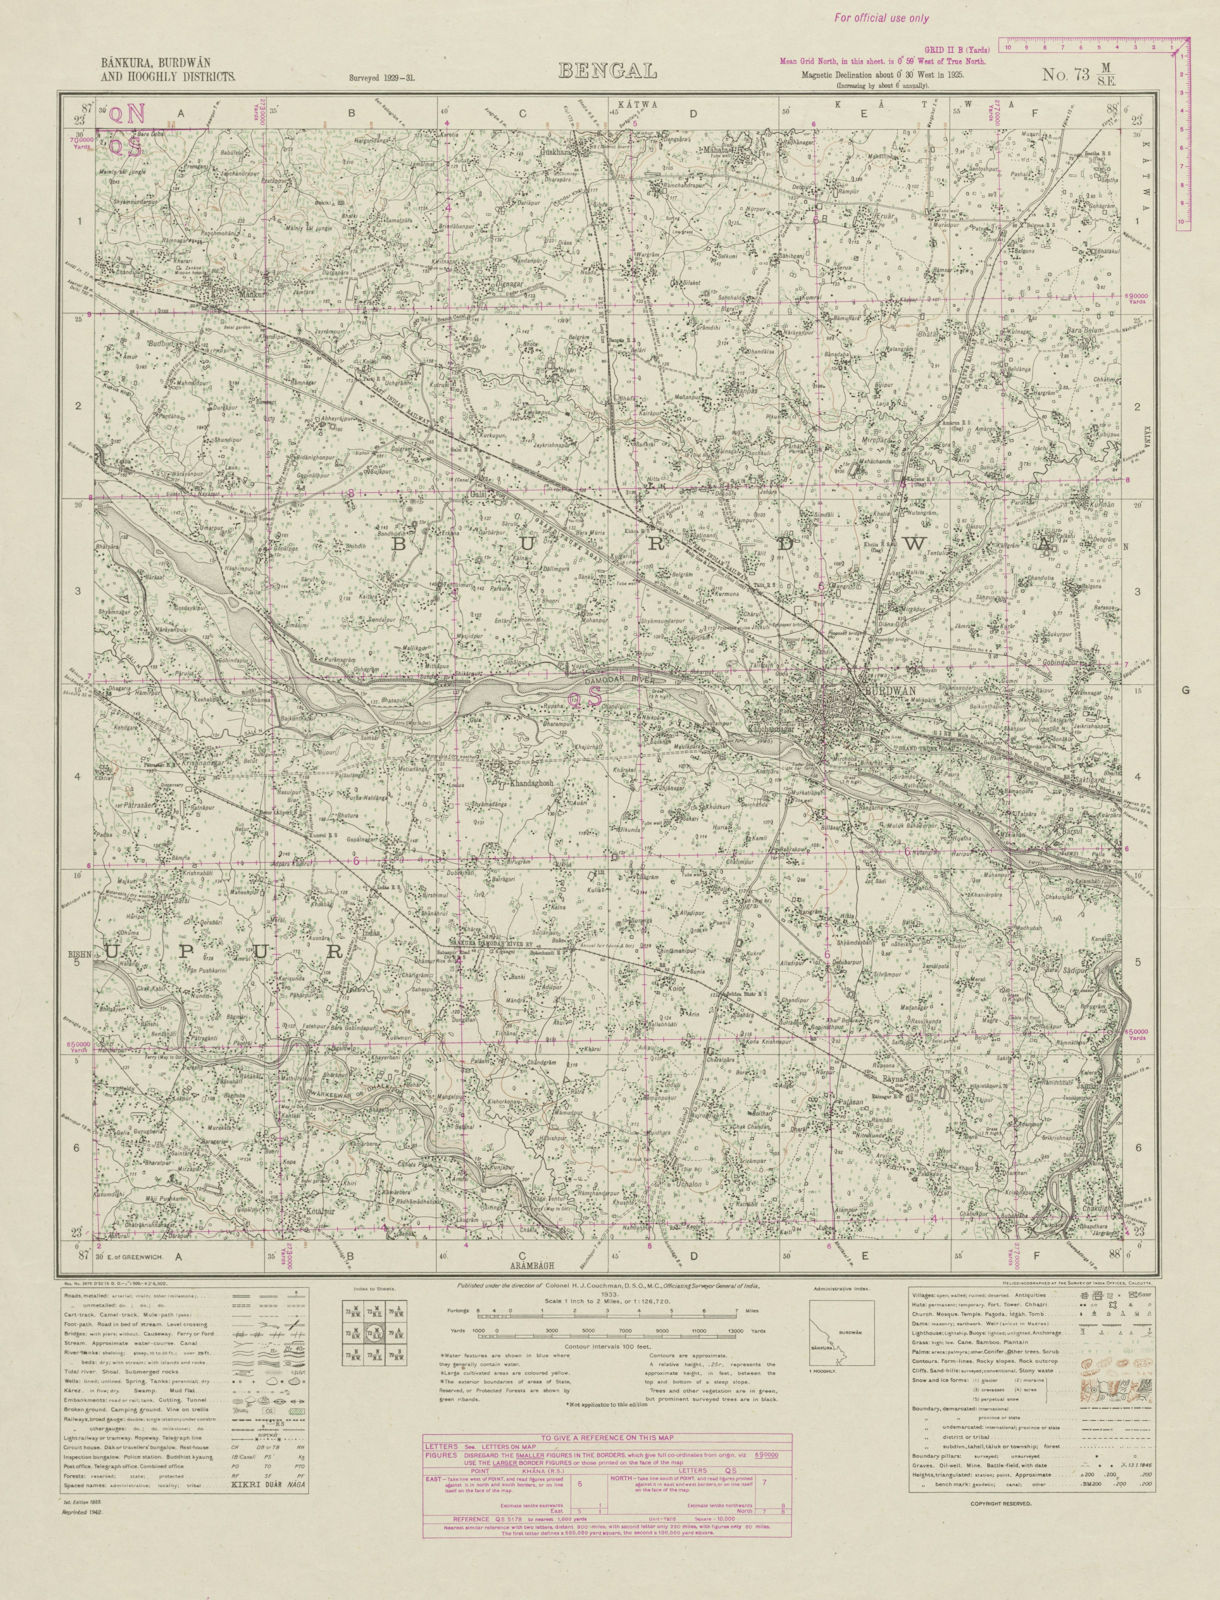 SURVEY OF INDIA 73 M/SE West Bengal Bardhaman Khandagosh Bhatar Indas 1942 map